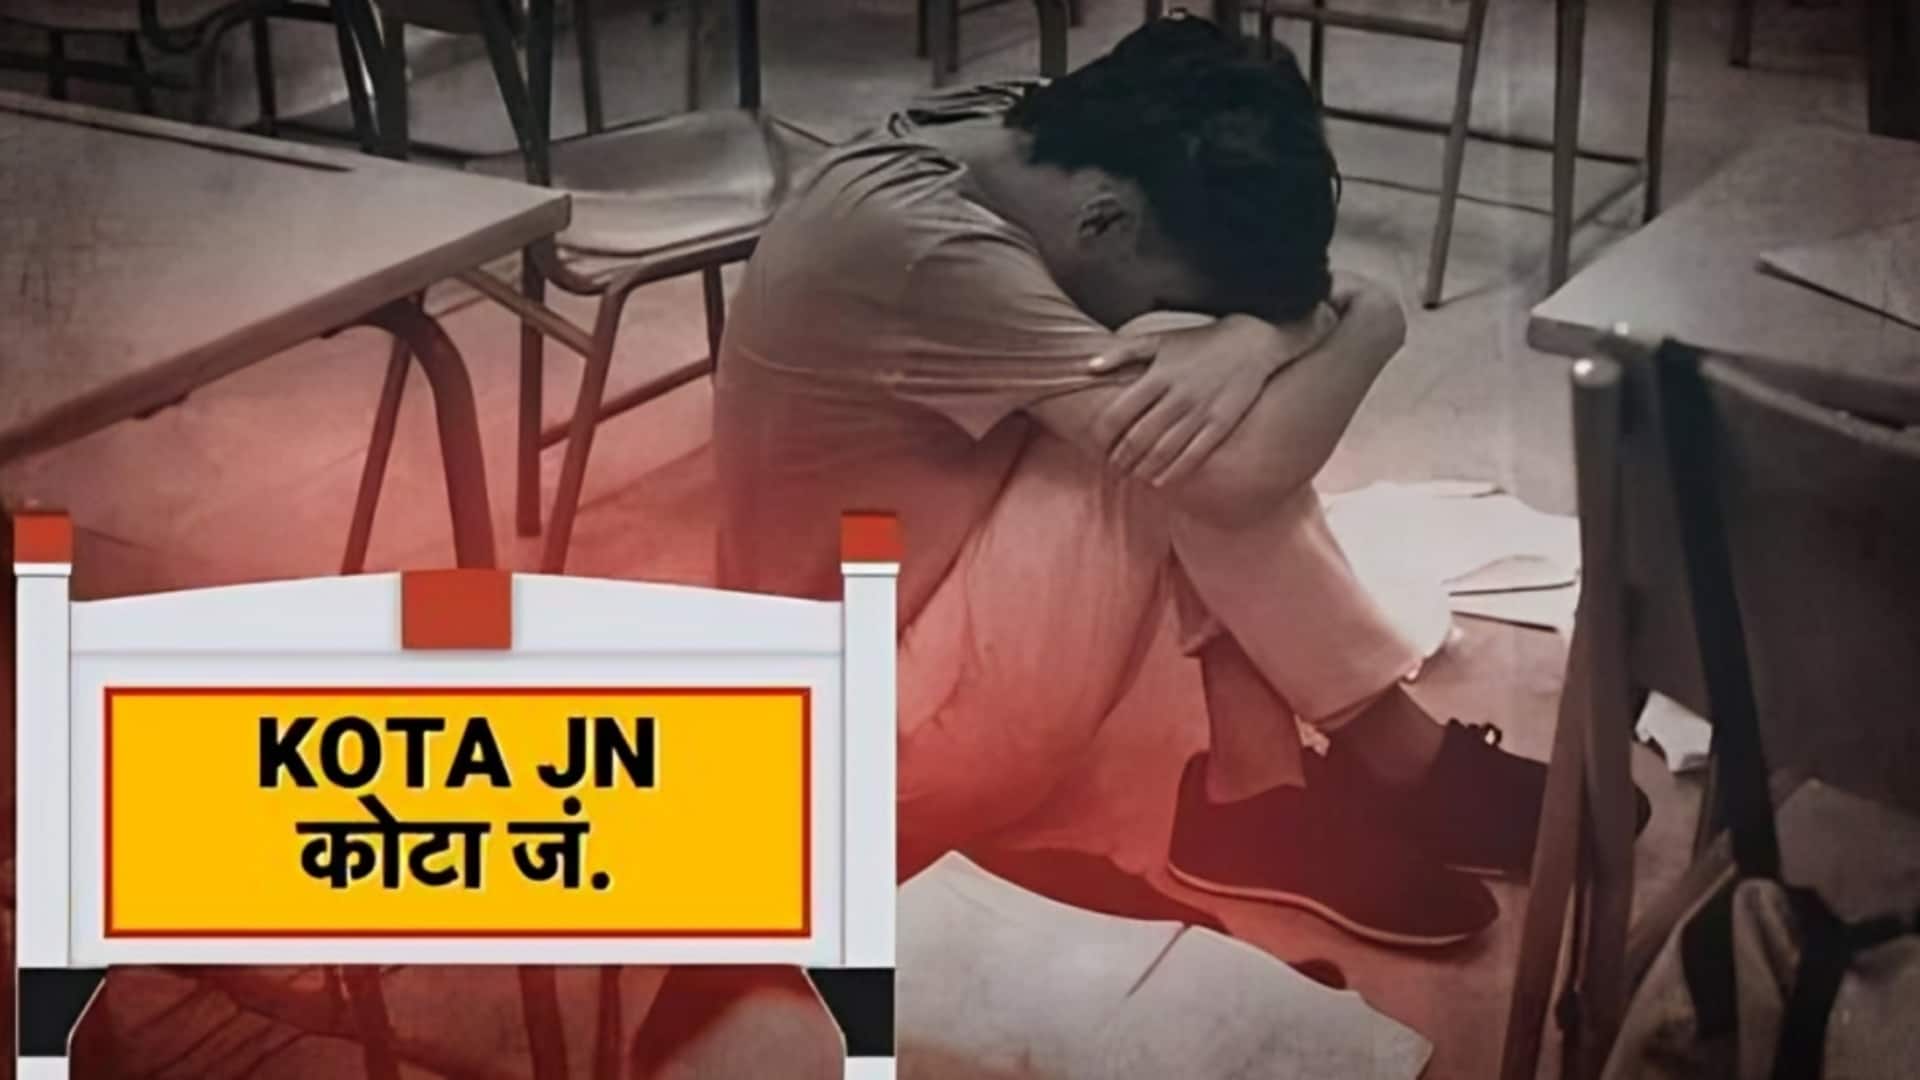 राजस्थान: कोटा में IIT की तैयारी कर रहे छात्र ने फांसी लगाकर जान दी, चौथी आत्महत्या